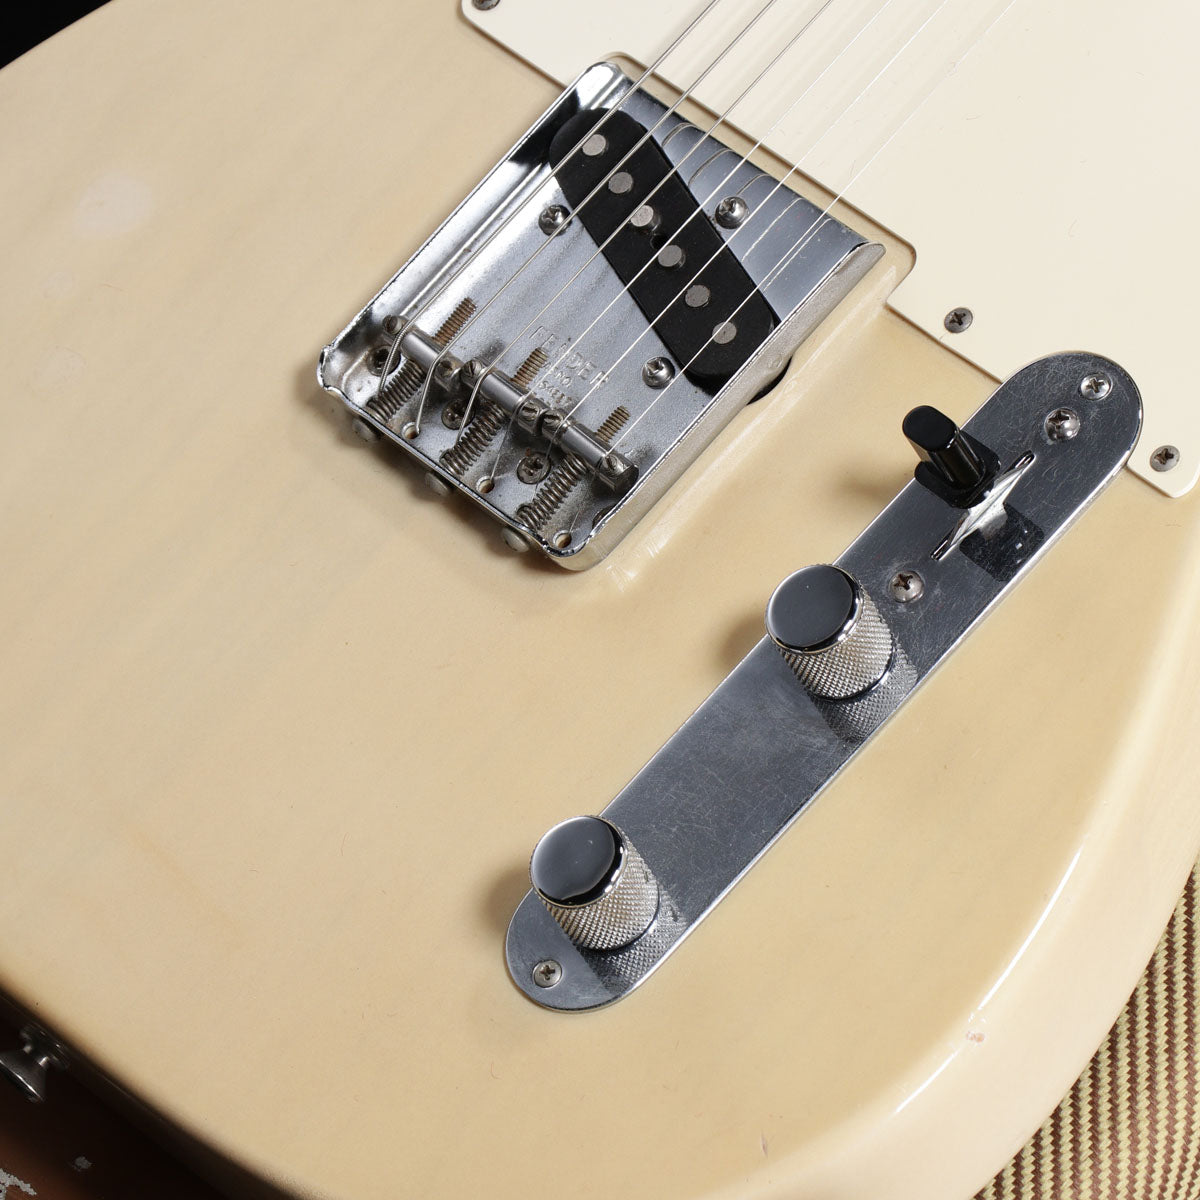 [SN V048619] USED Fender Custom Shop / 1972 Telecaster 1990 [05]